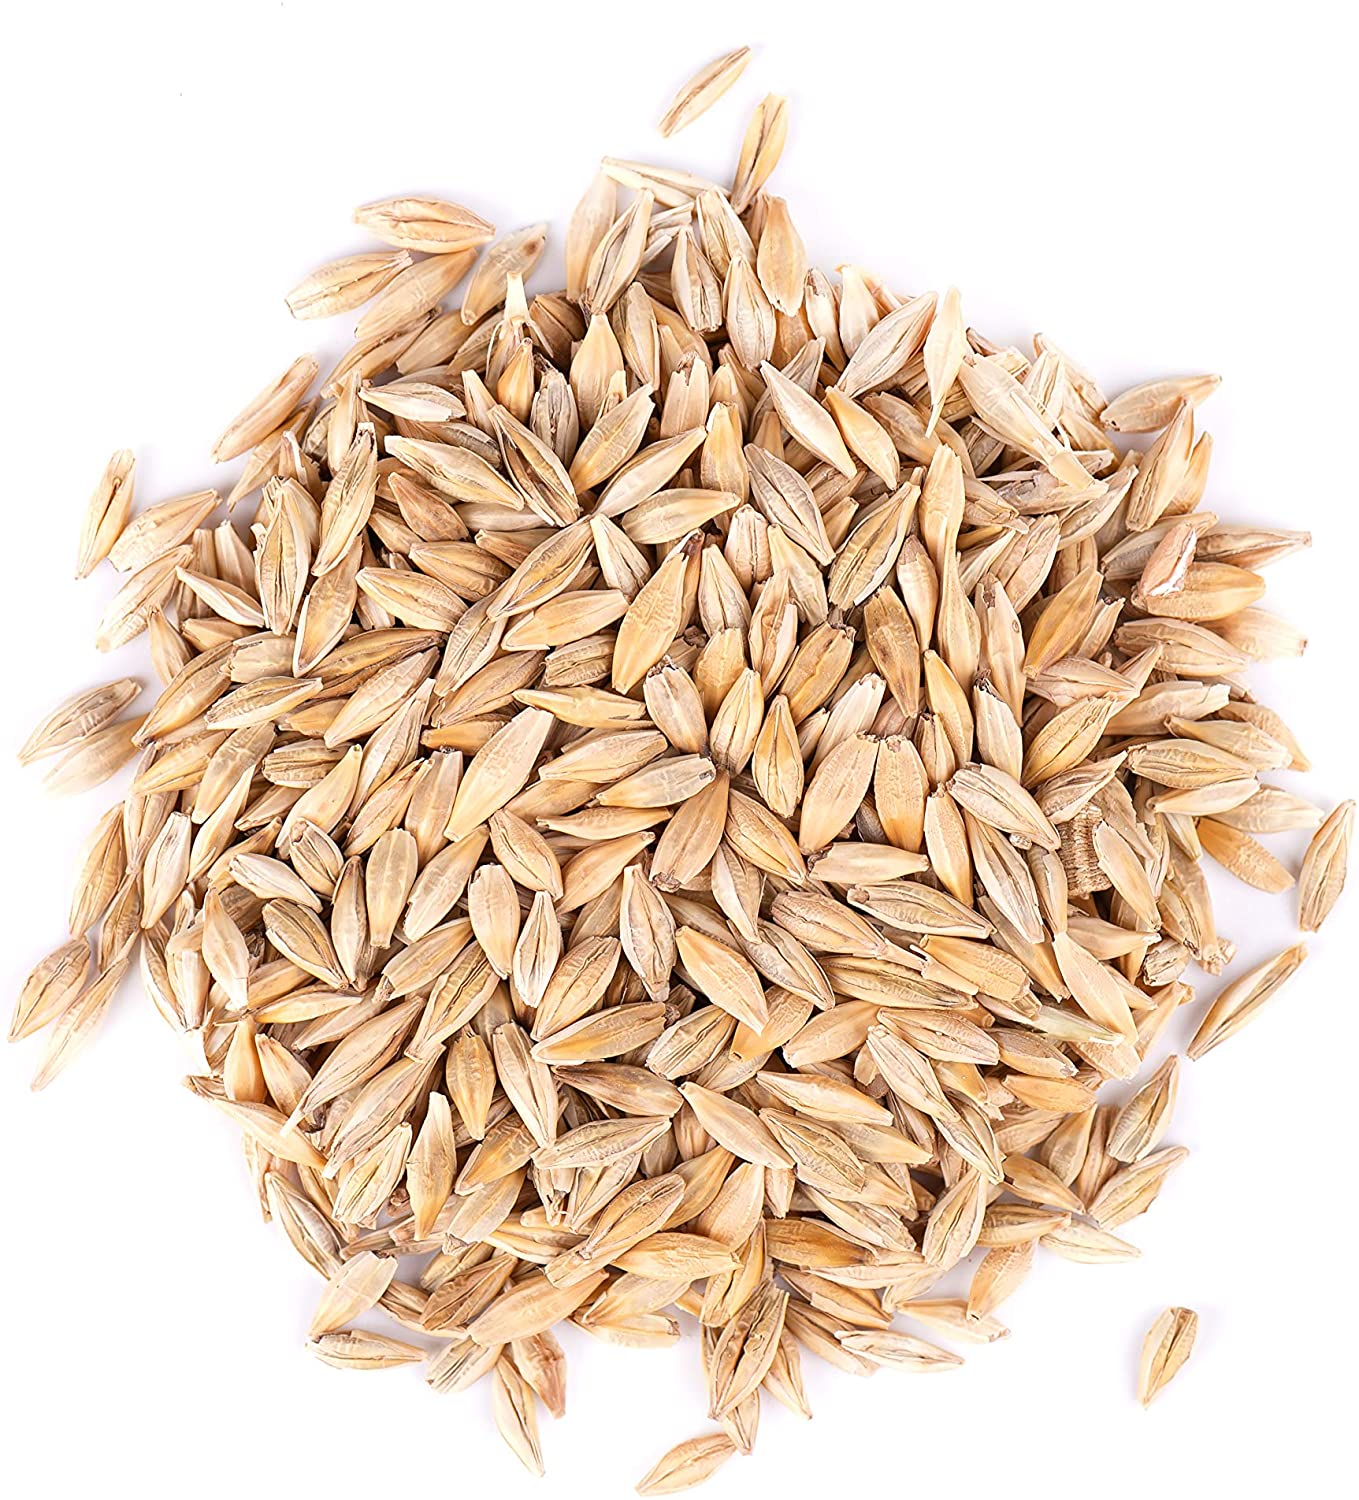 Barley seed